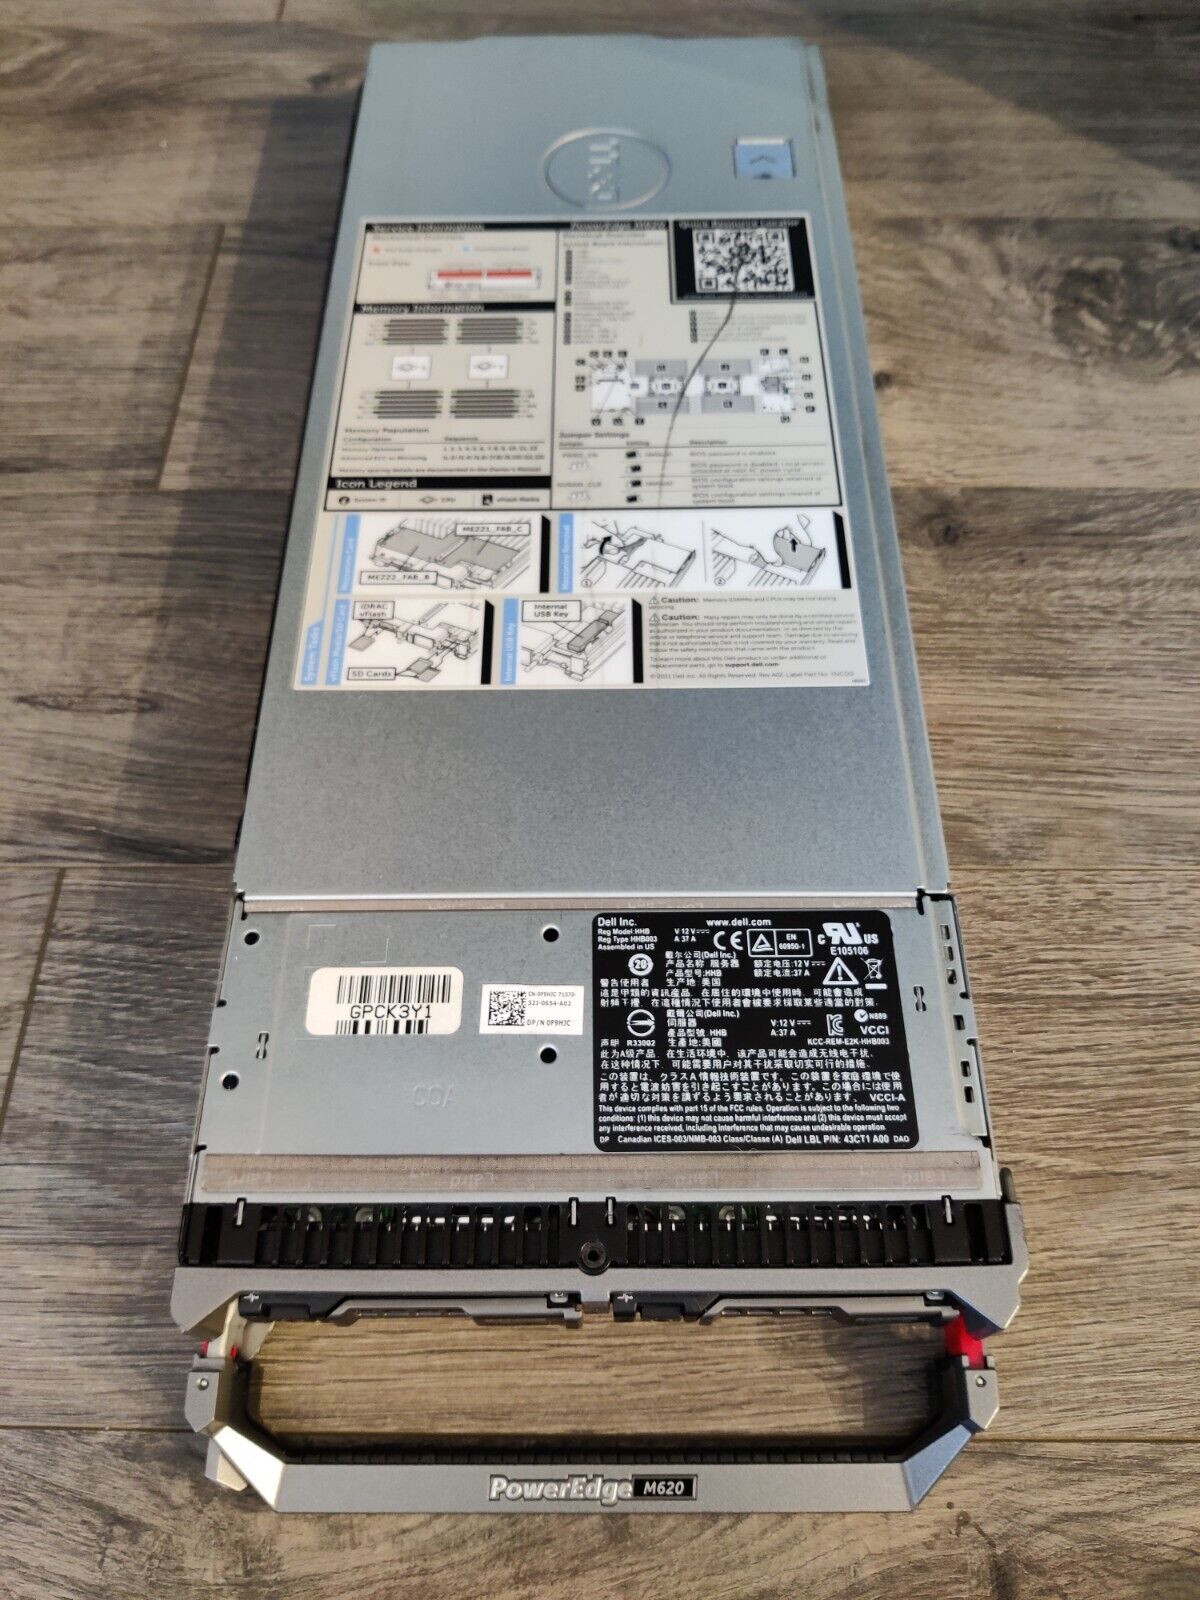 Dell PowerEdge M620 Blade Server - E5-2670 2.6GHz, 320GB RAM, 146GB SAS HDDs